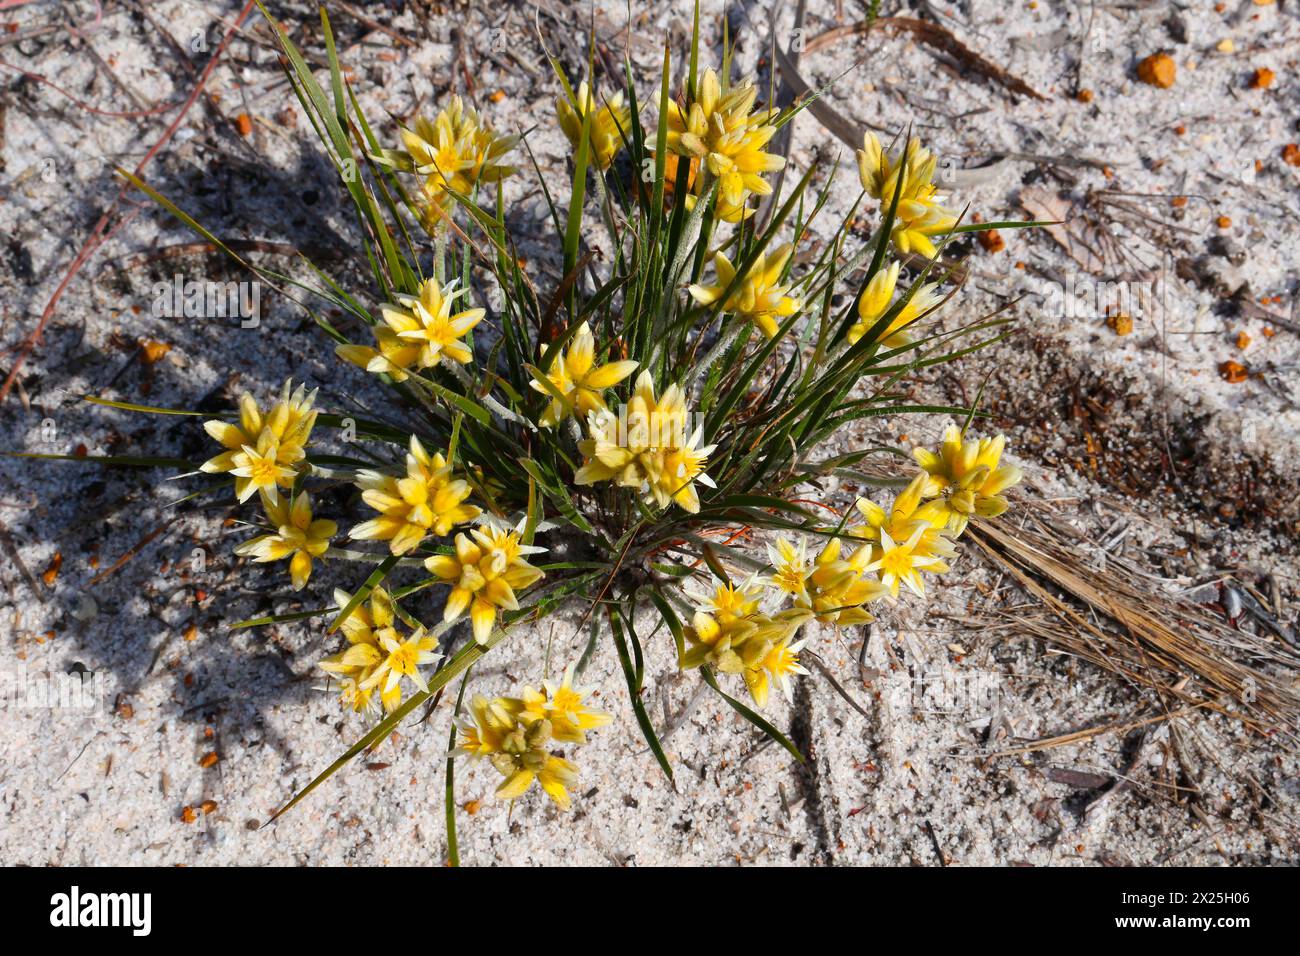 Yellow conostylis flowers (Conostylis aculeata) endemic to Western Australia growing on white sand Stock Photo